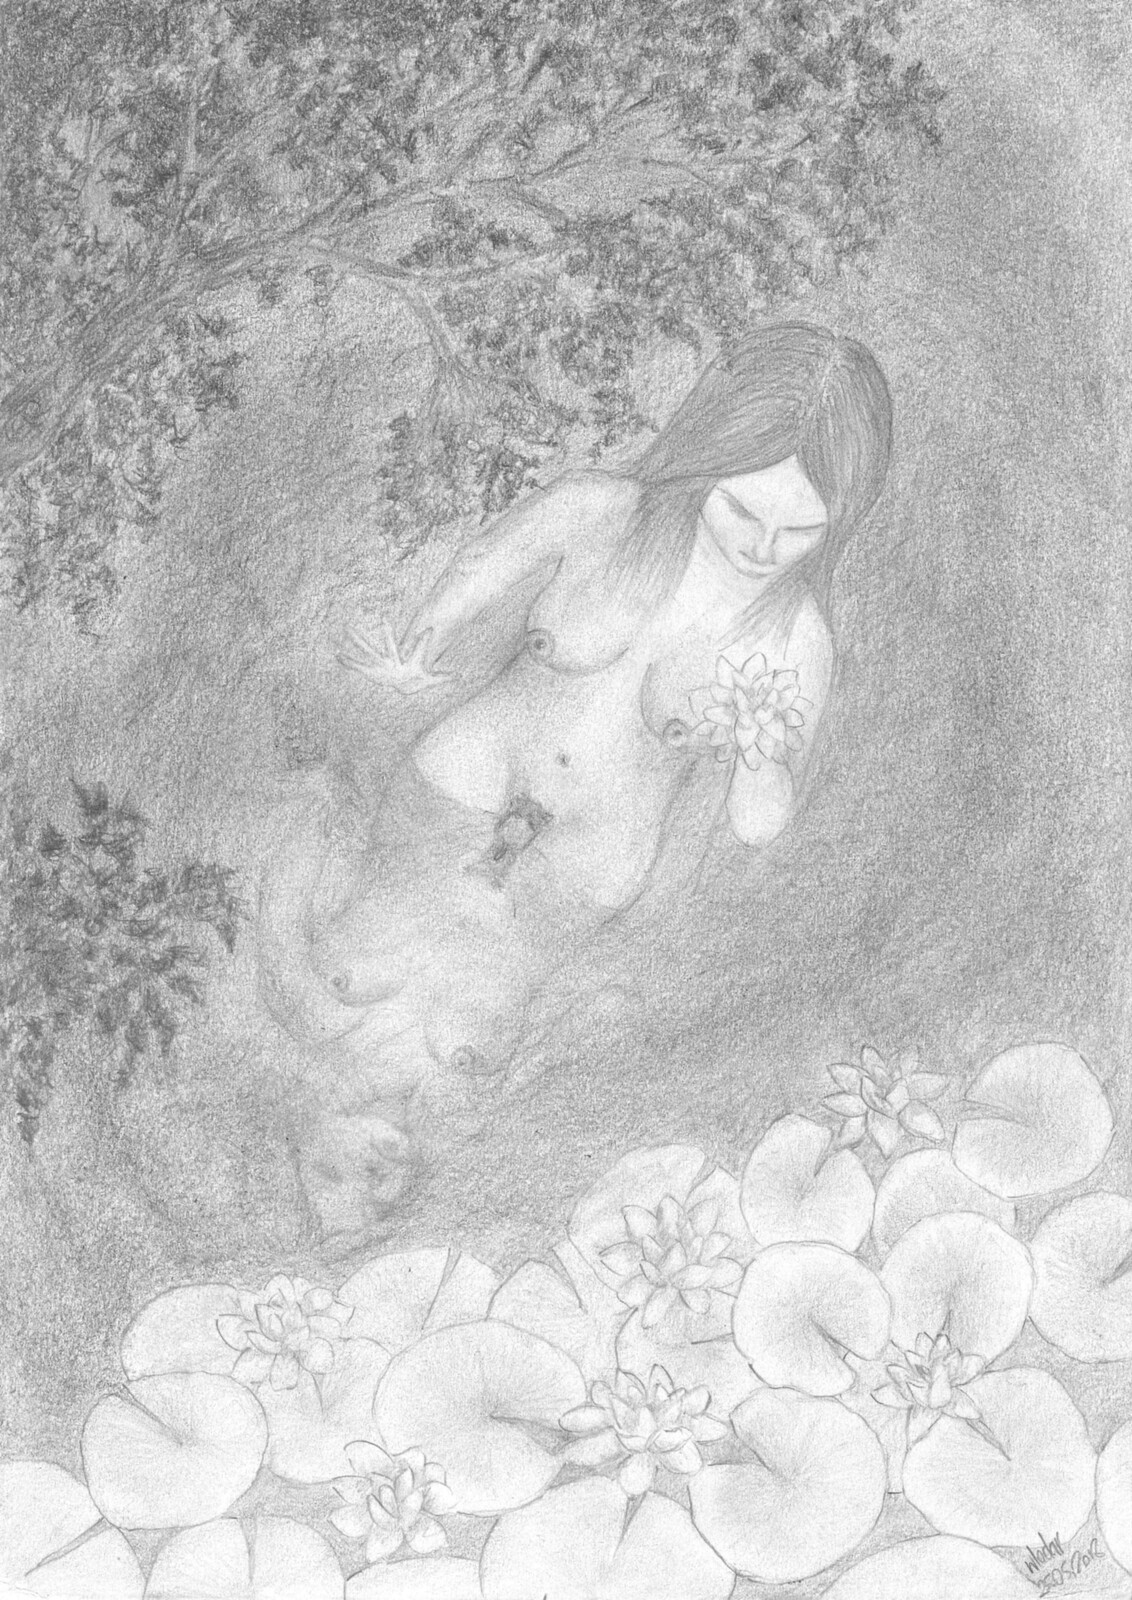 Lilies - Lilie - a pencil sketch